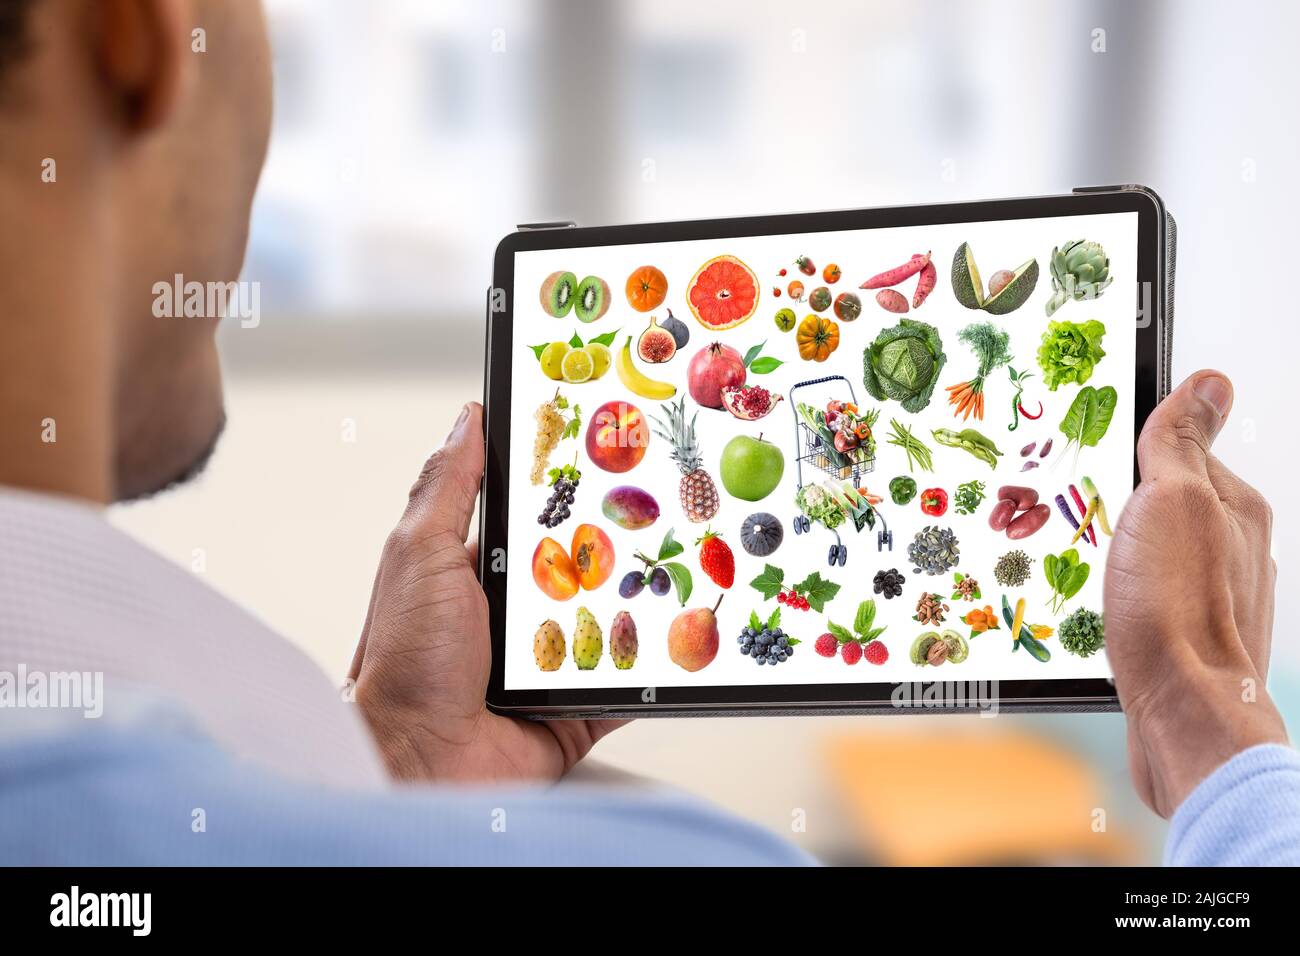 Mangiare sano concetto su un tablet.giovane azienda digitale compressa con cibo sano Foto Stock